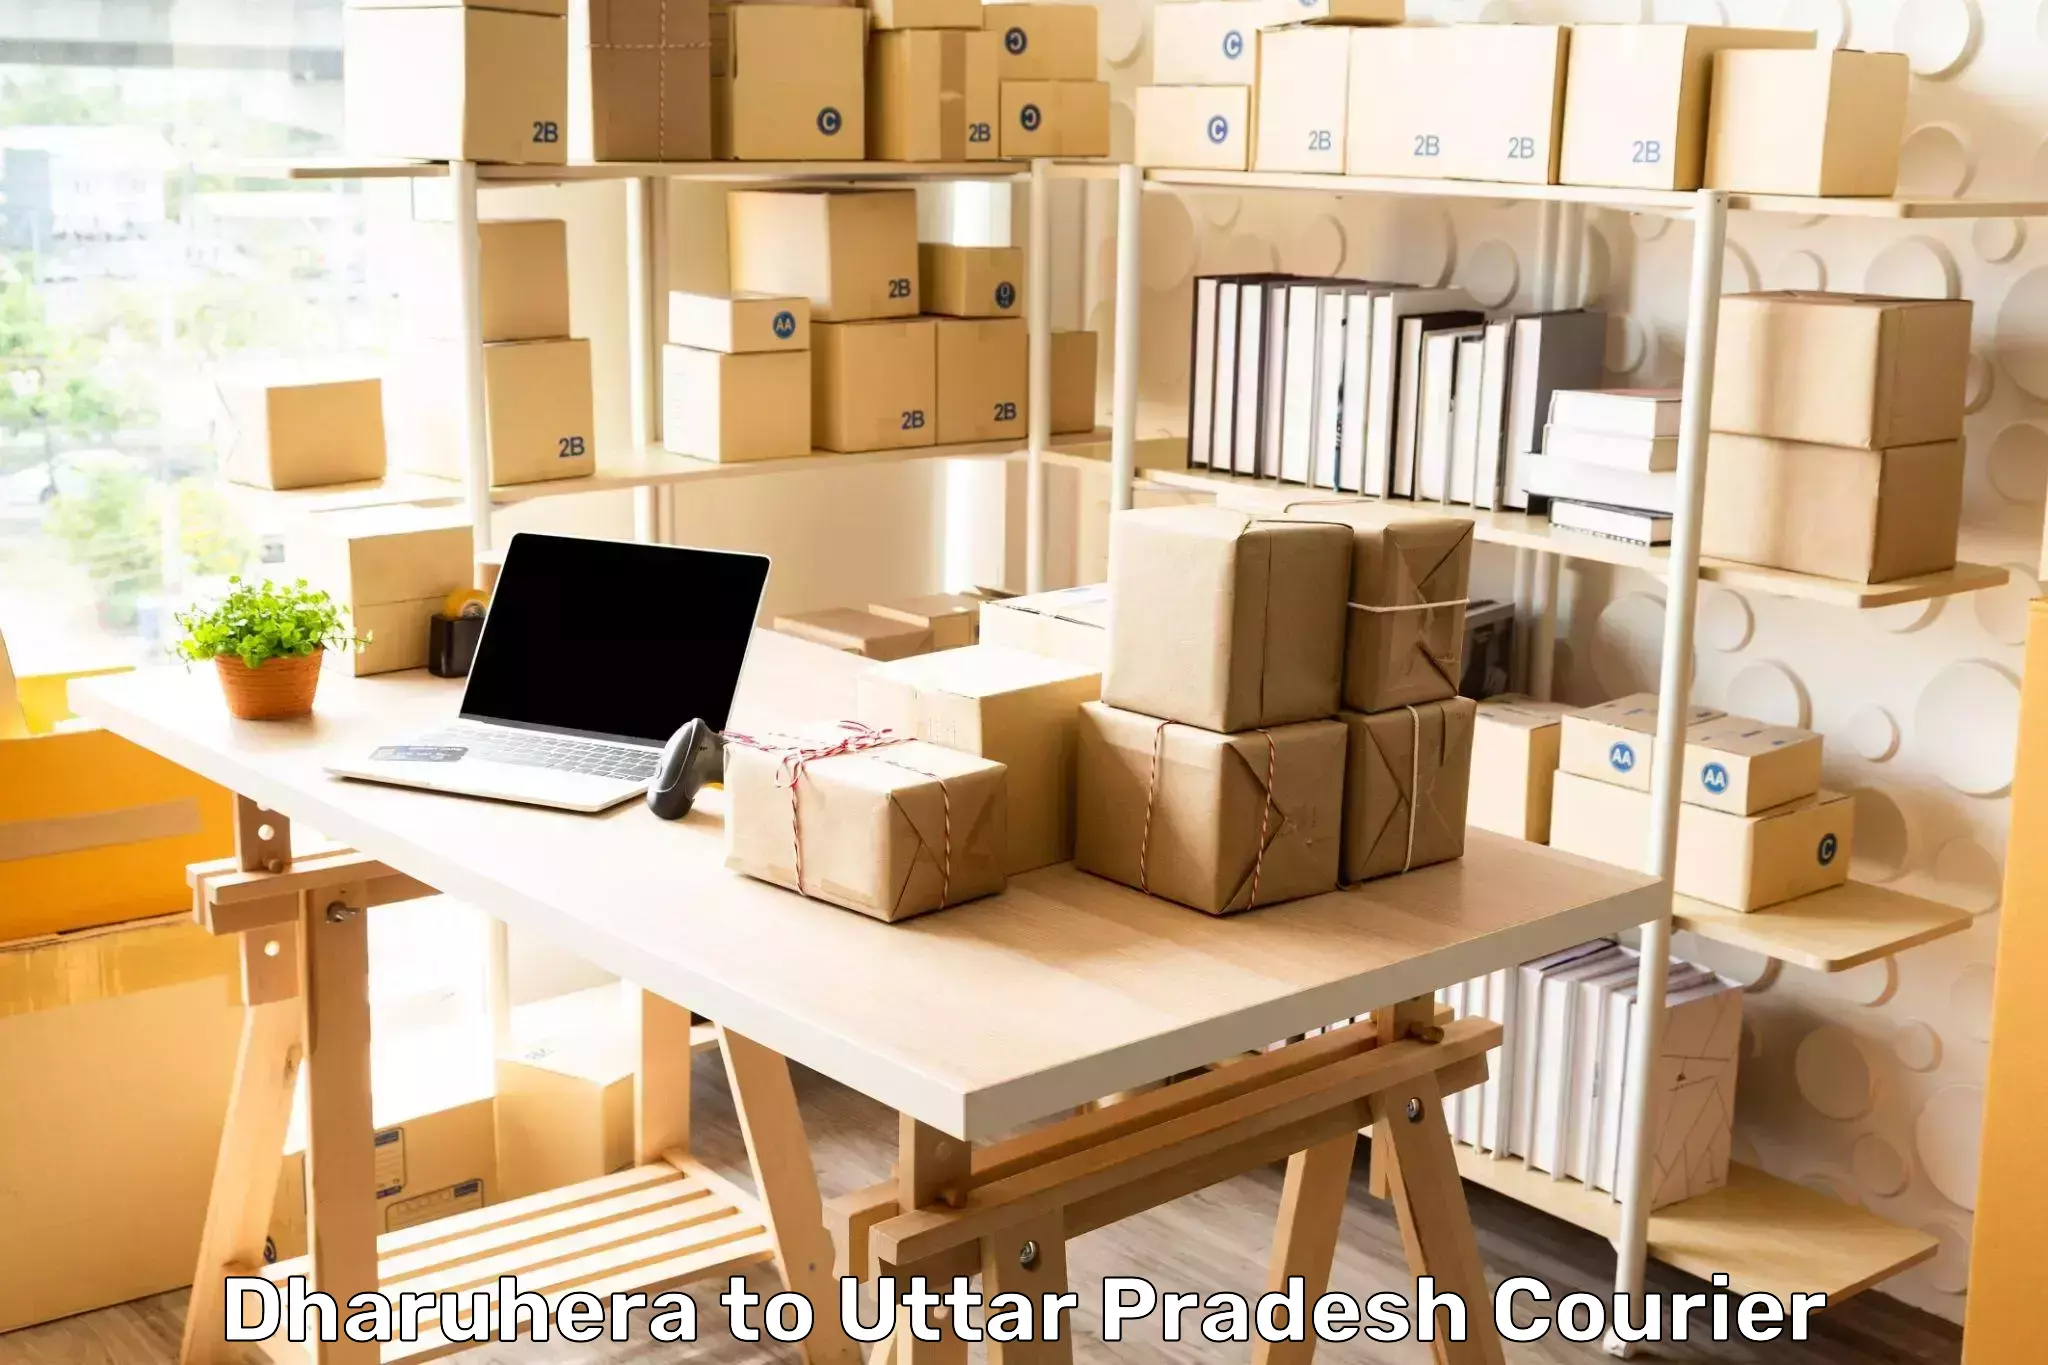 Supply chain efficiency Dharuhera to Uttar Pradesh